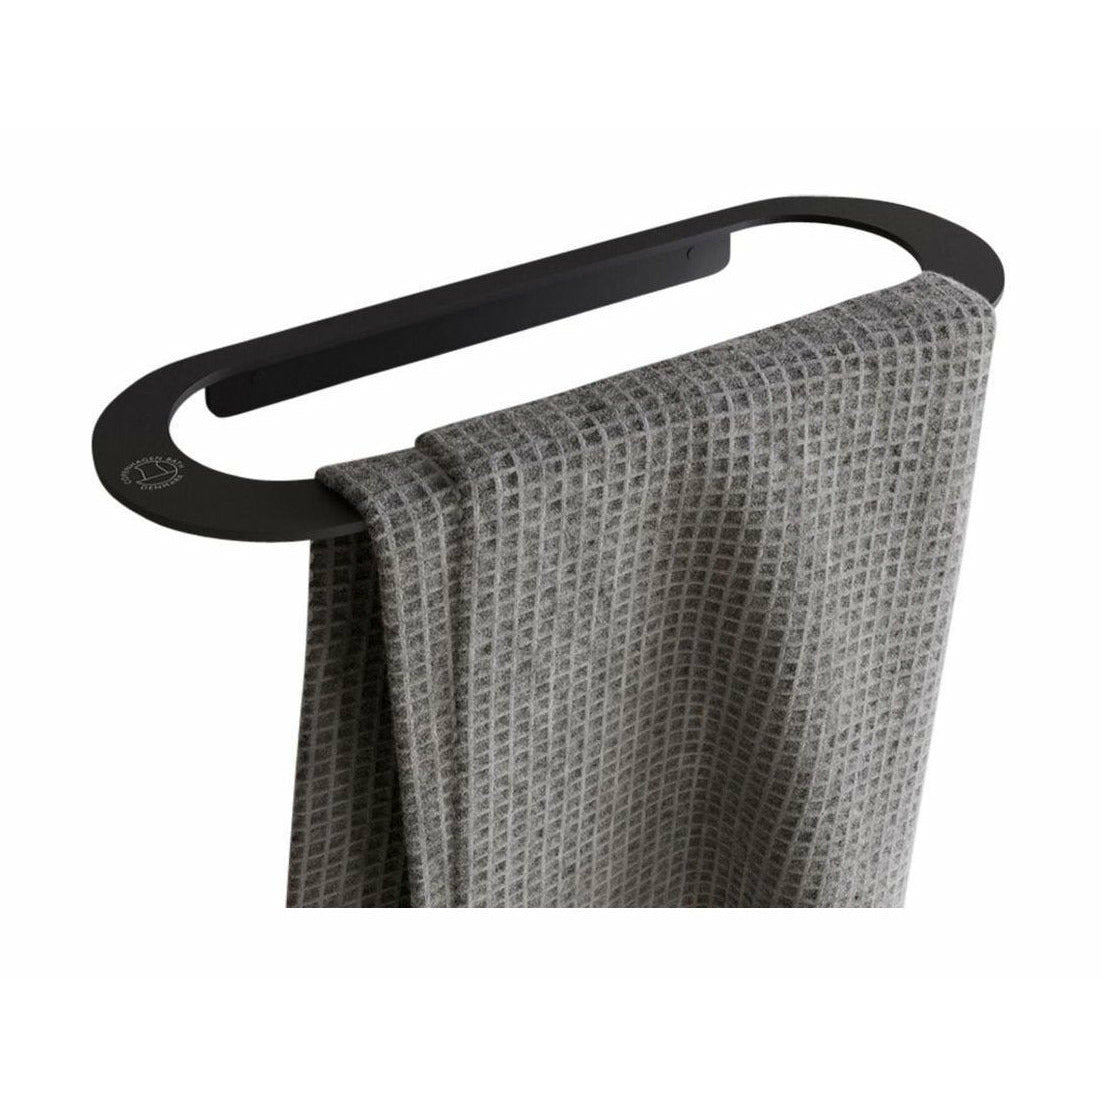 Porta di asciugamani CB COPENHAGEN CB 100 L28 cm, tappetino nero